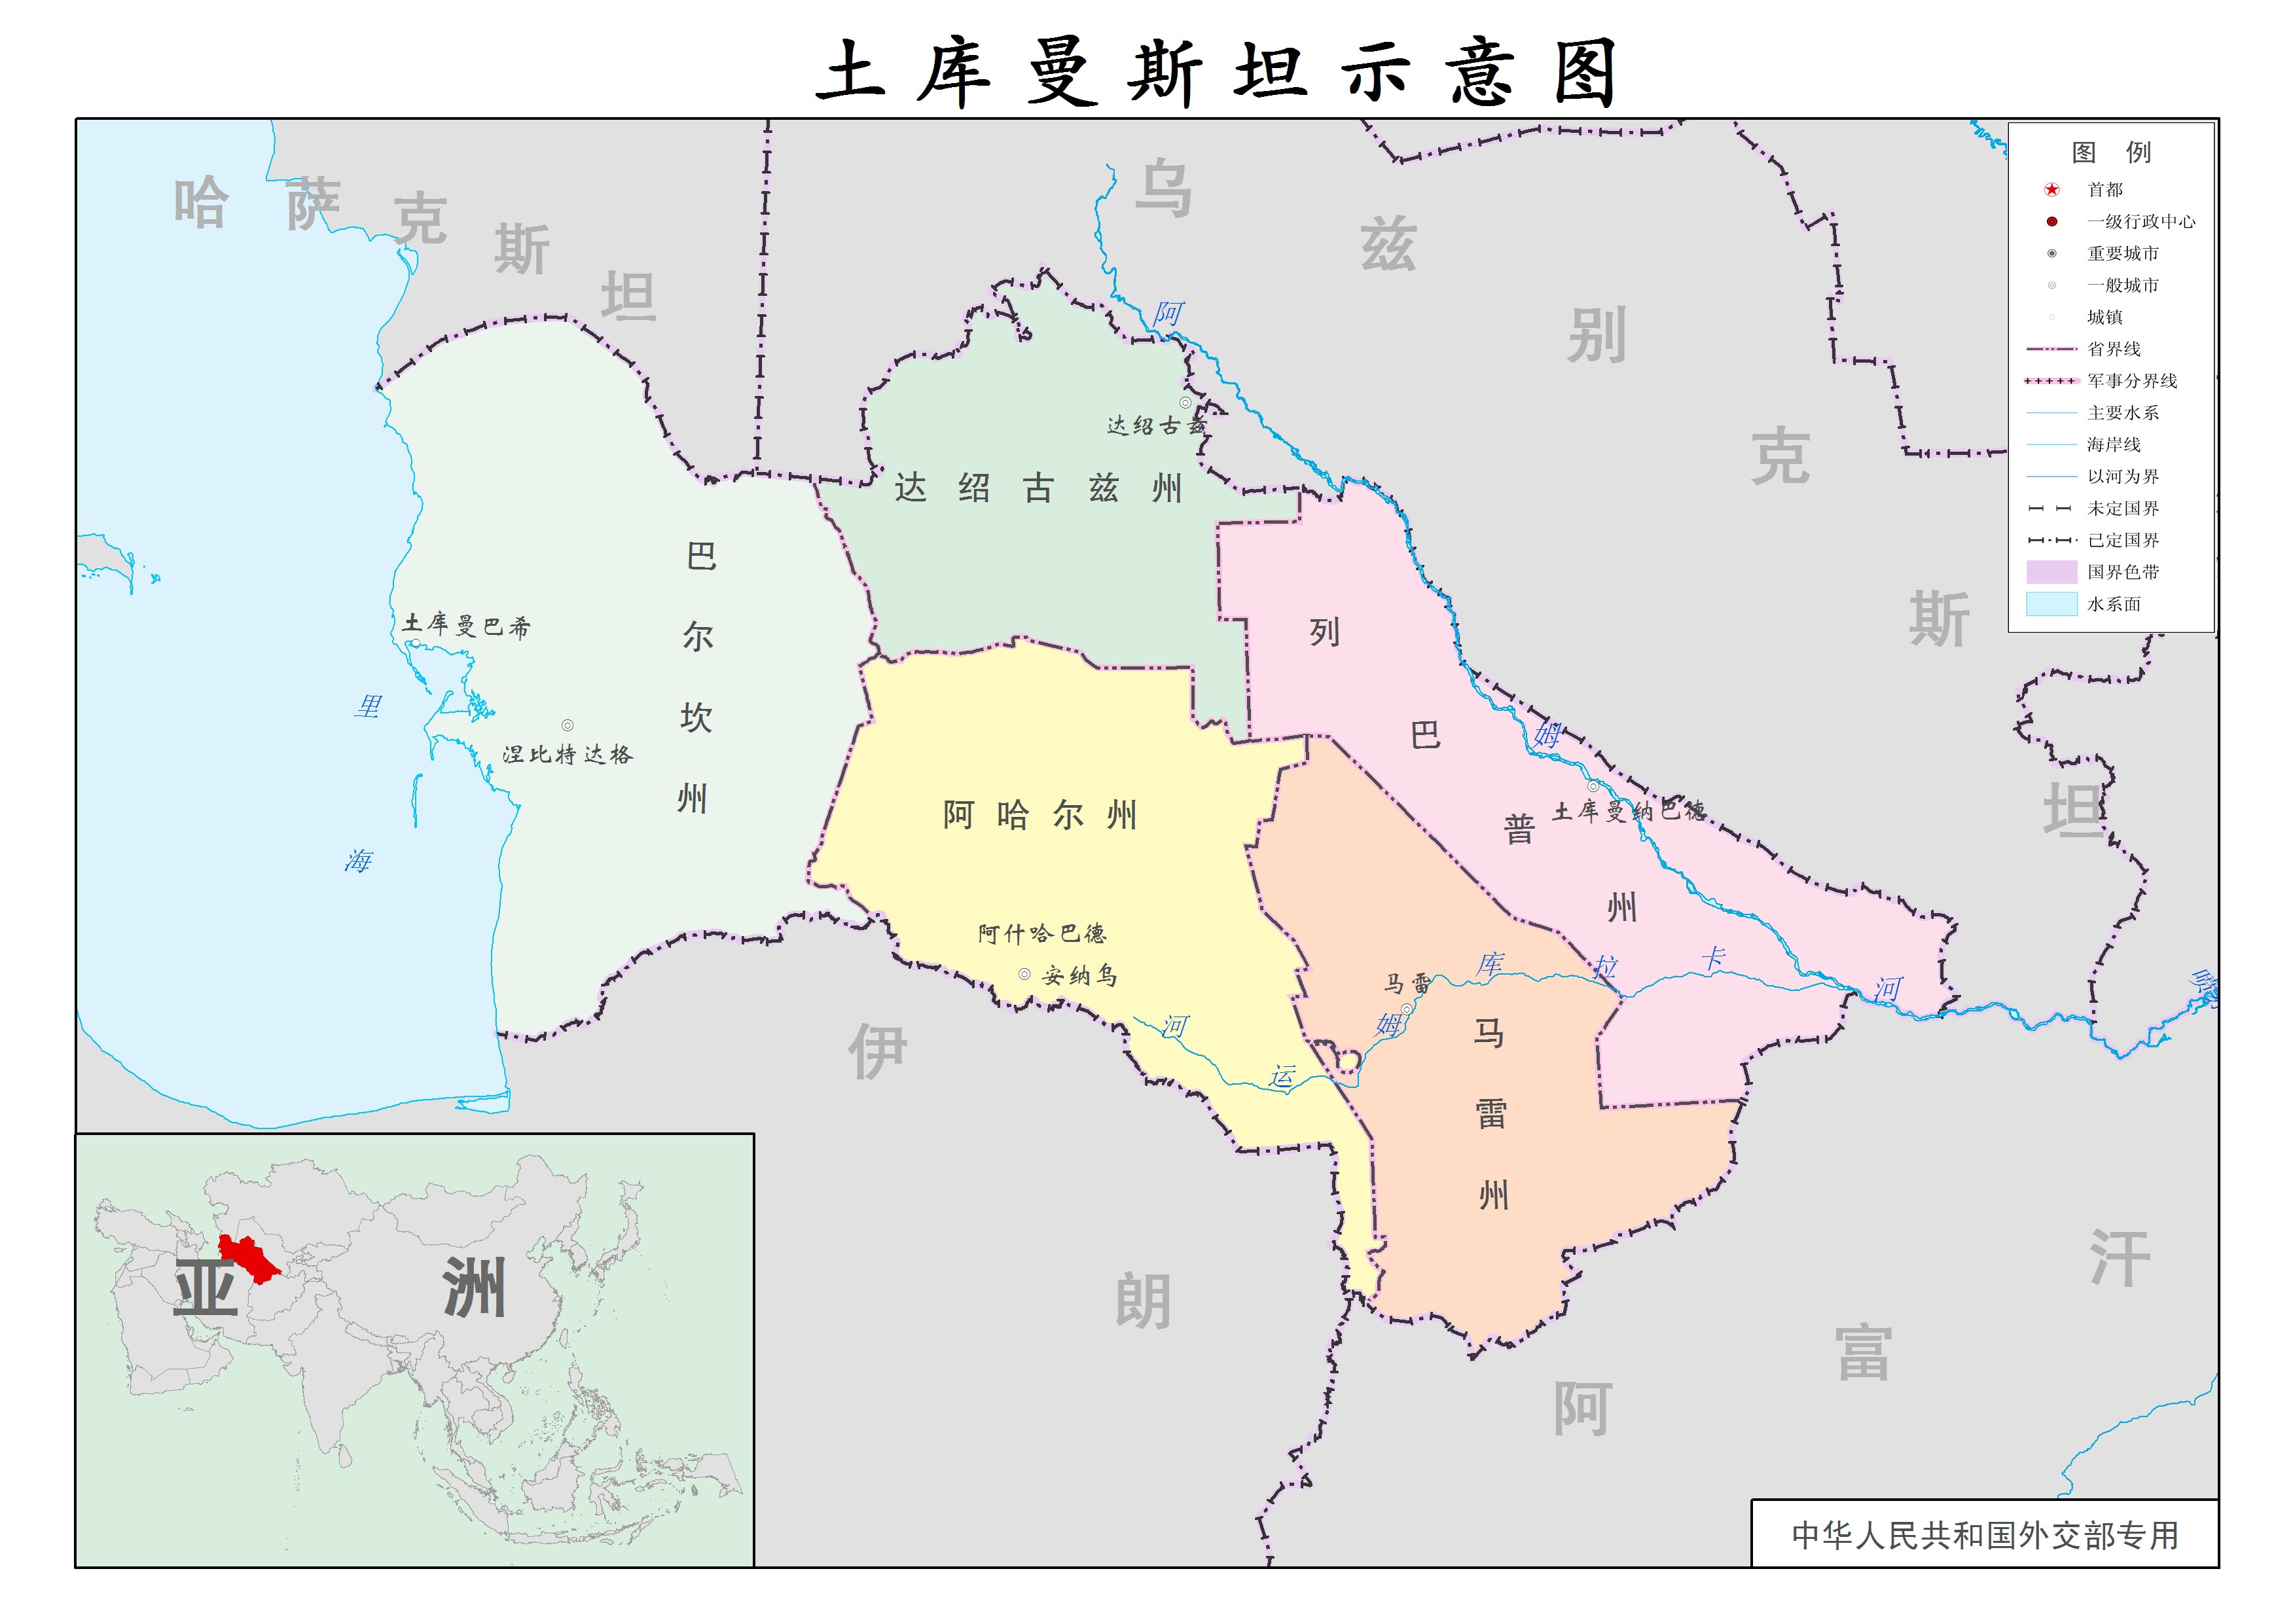 土庫曼斯坦行政區劃